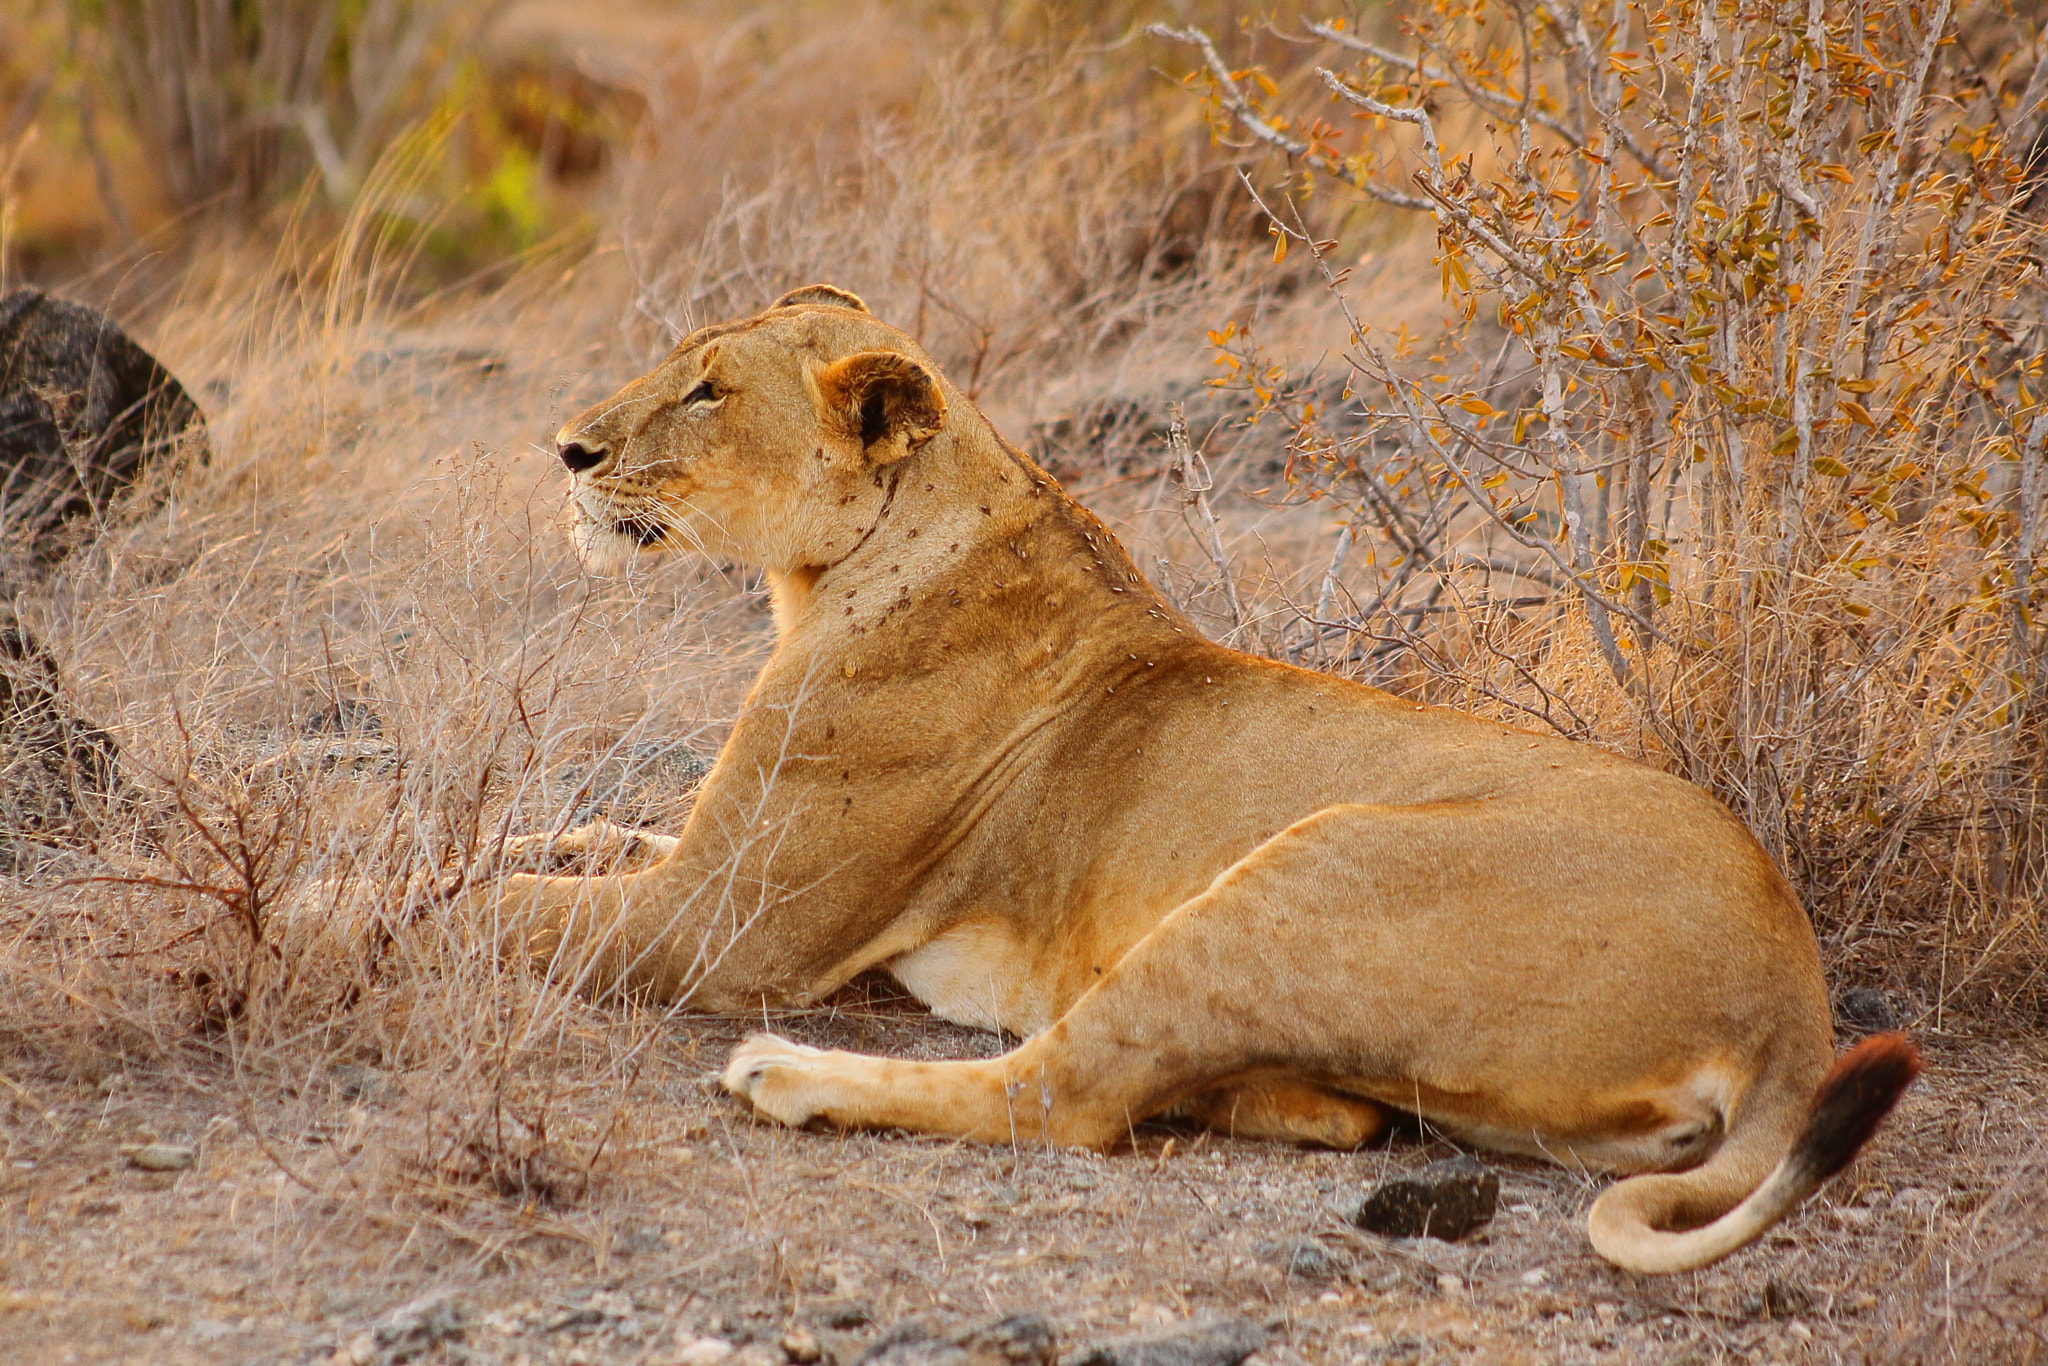 Canon EOS 50D sample photo. Kenia lion photography